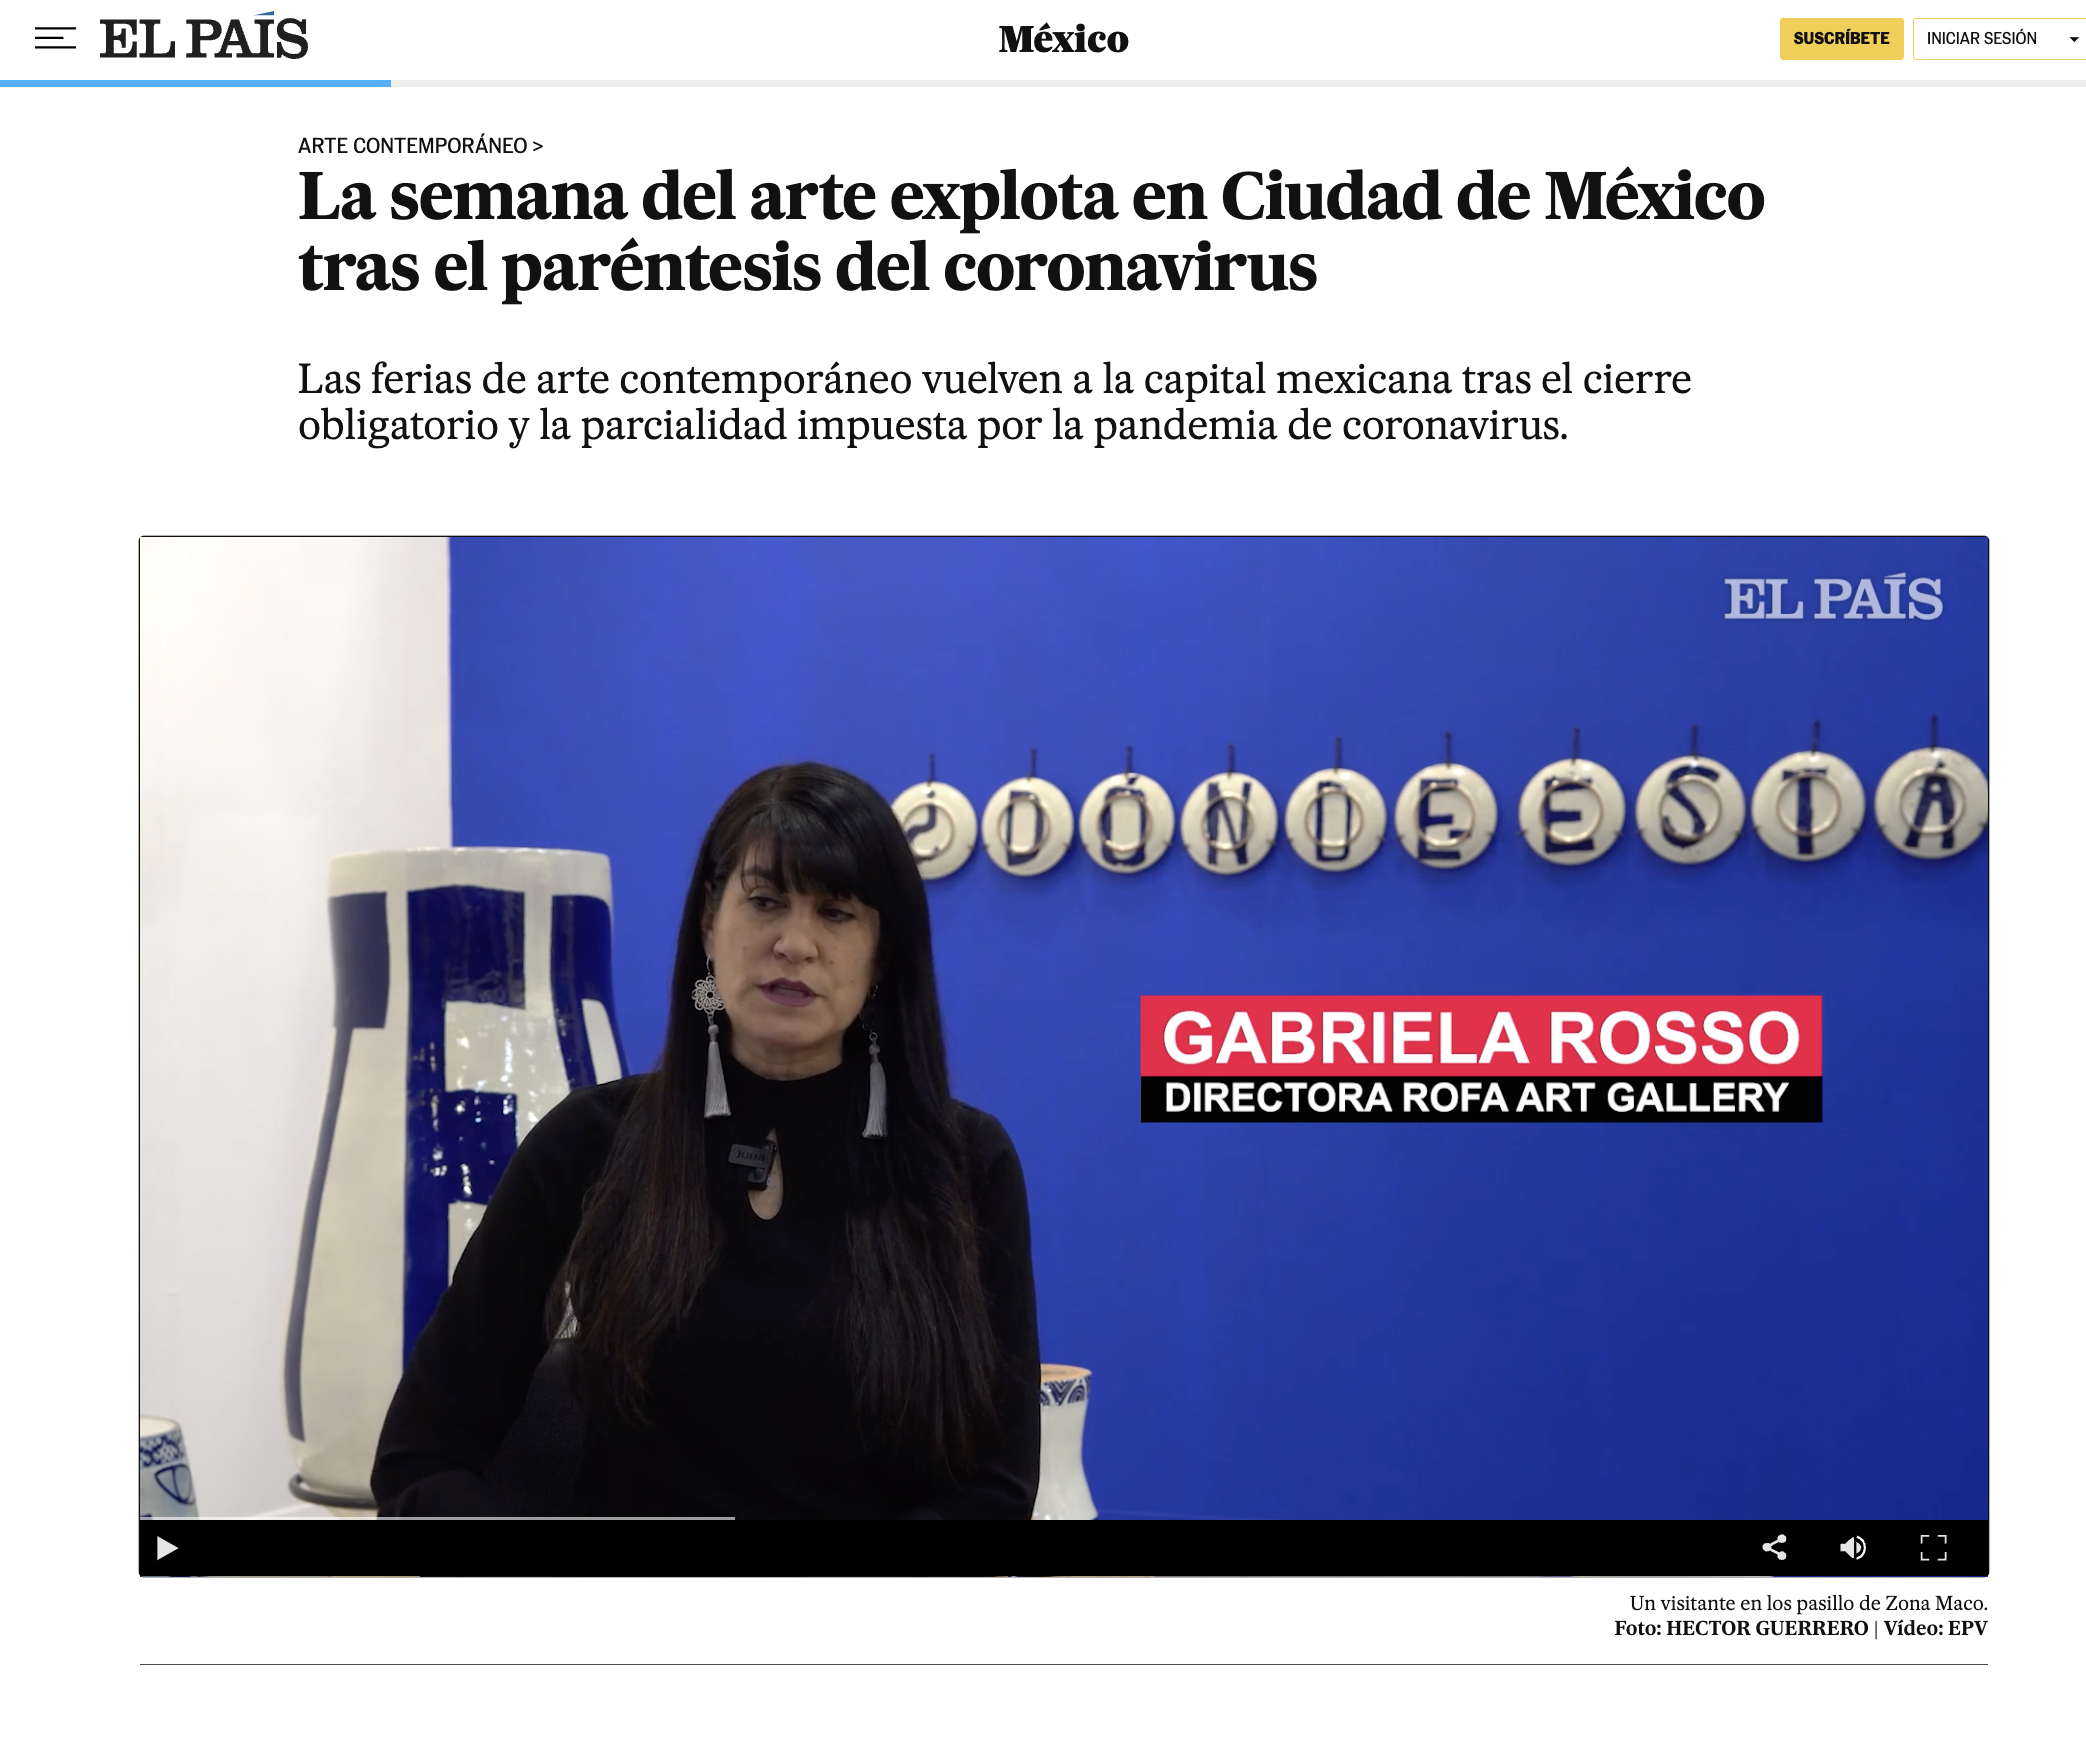 Featured in El País